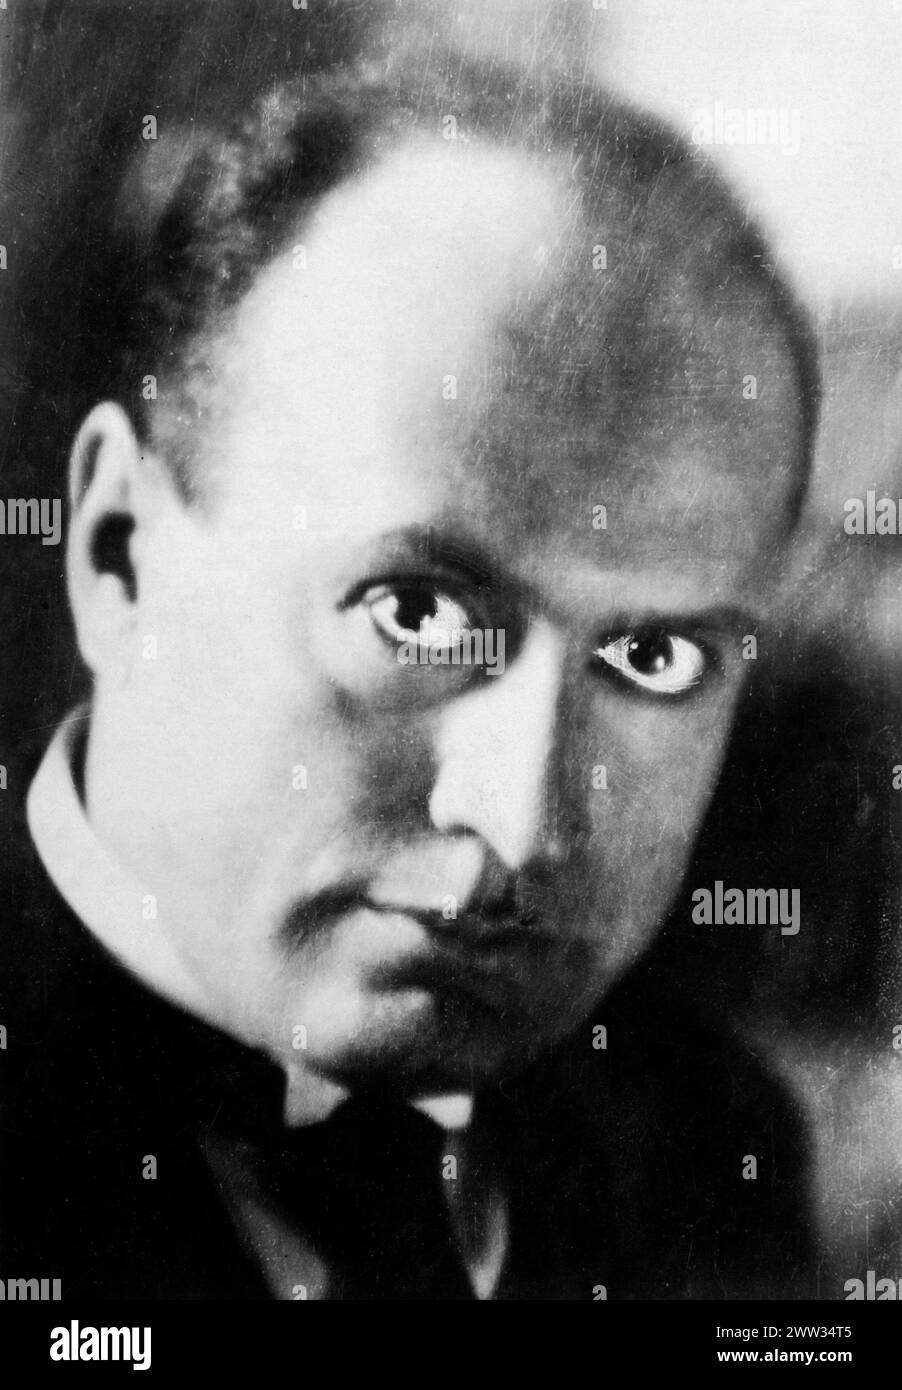 Benito Amilcare Andrea Mussolini (1883 - 1945) - il Duce - dittatore fascista italiano dal 1922-1943 - foto ritoccata a mano, 1924 Foto Stock